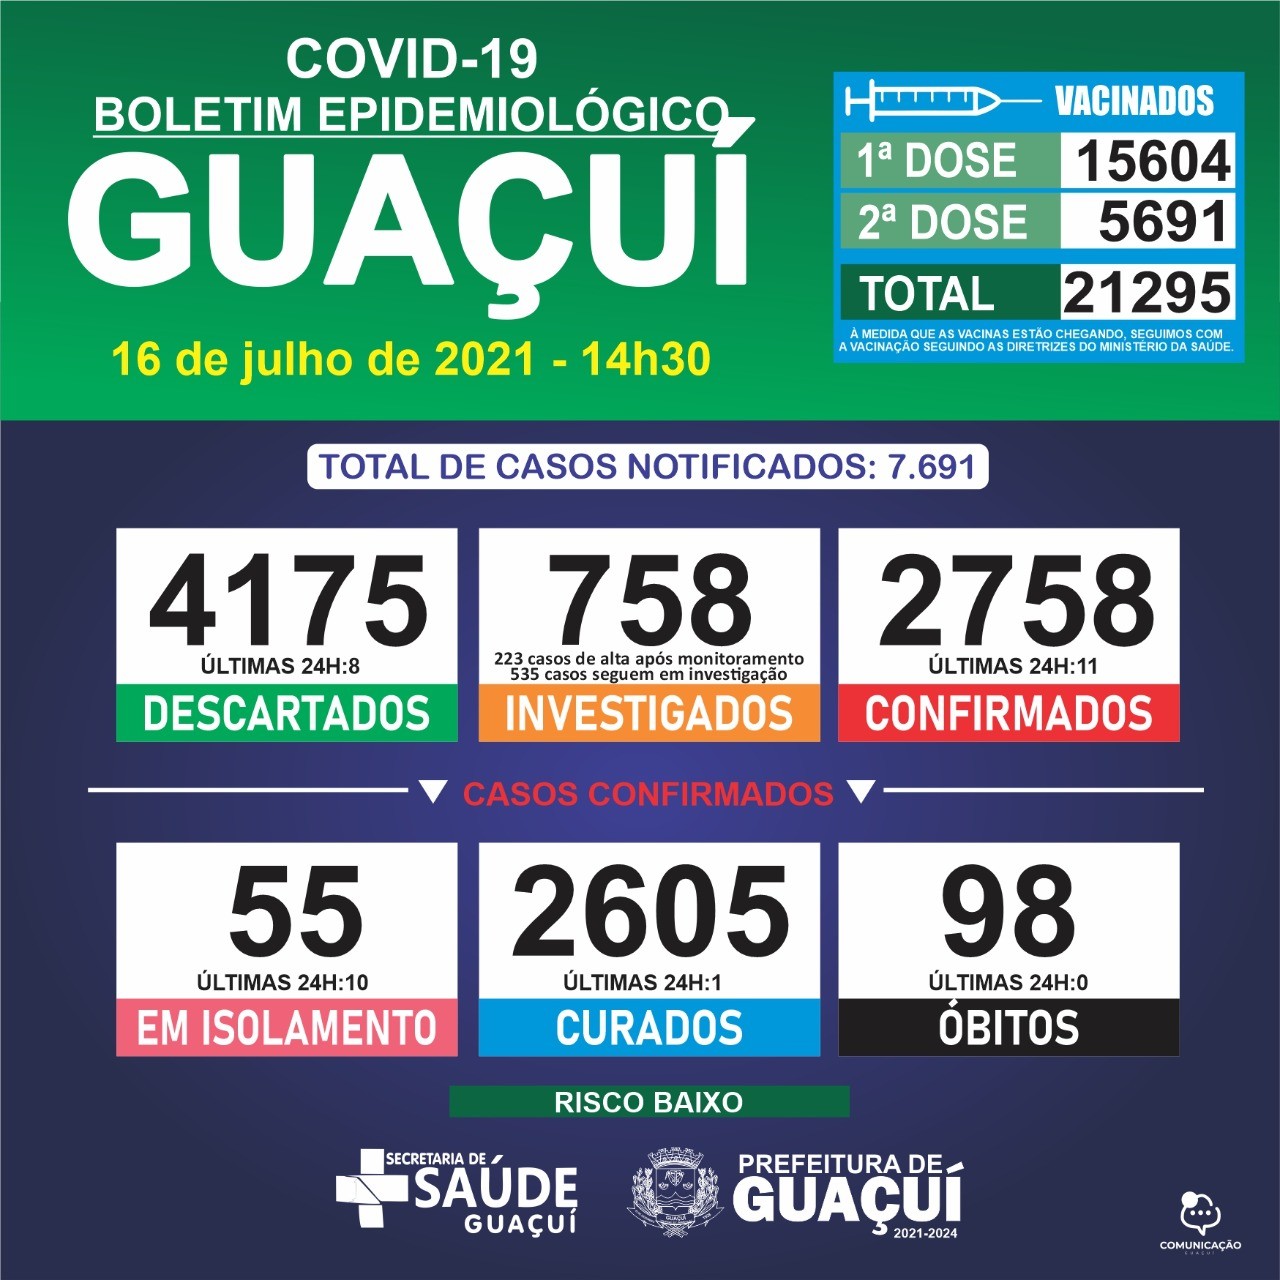 Boletim Epidemiológico 16/07/21: Guaçuí registra 11 casos confirmados e 1 curado nas últimas 24 horas